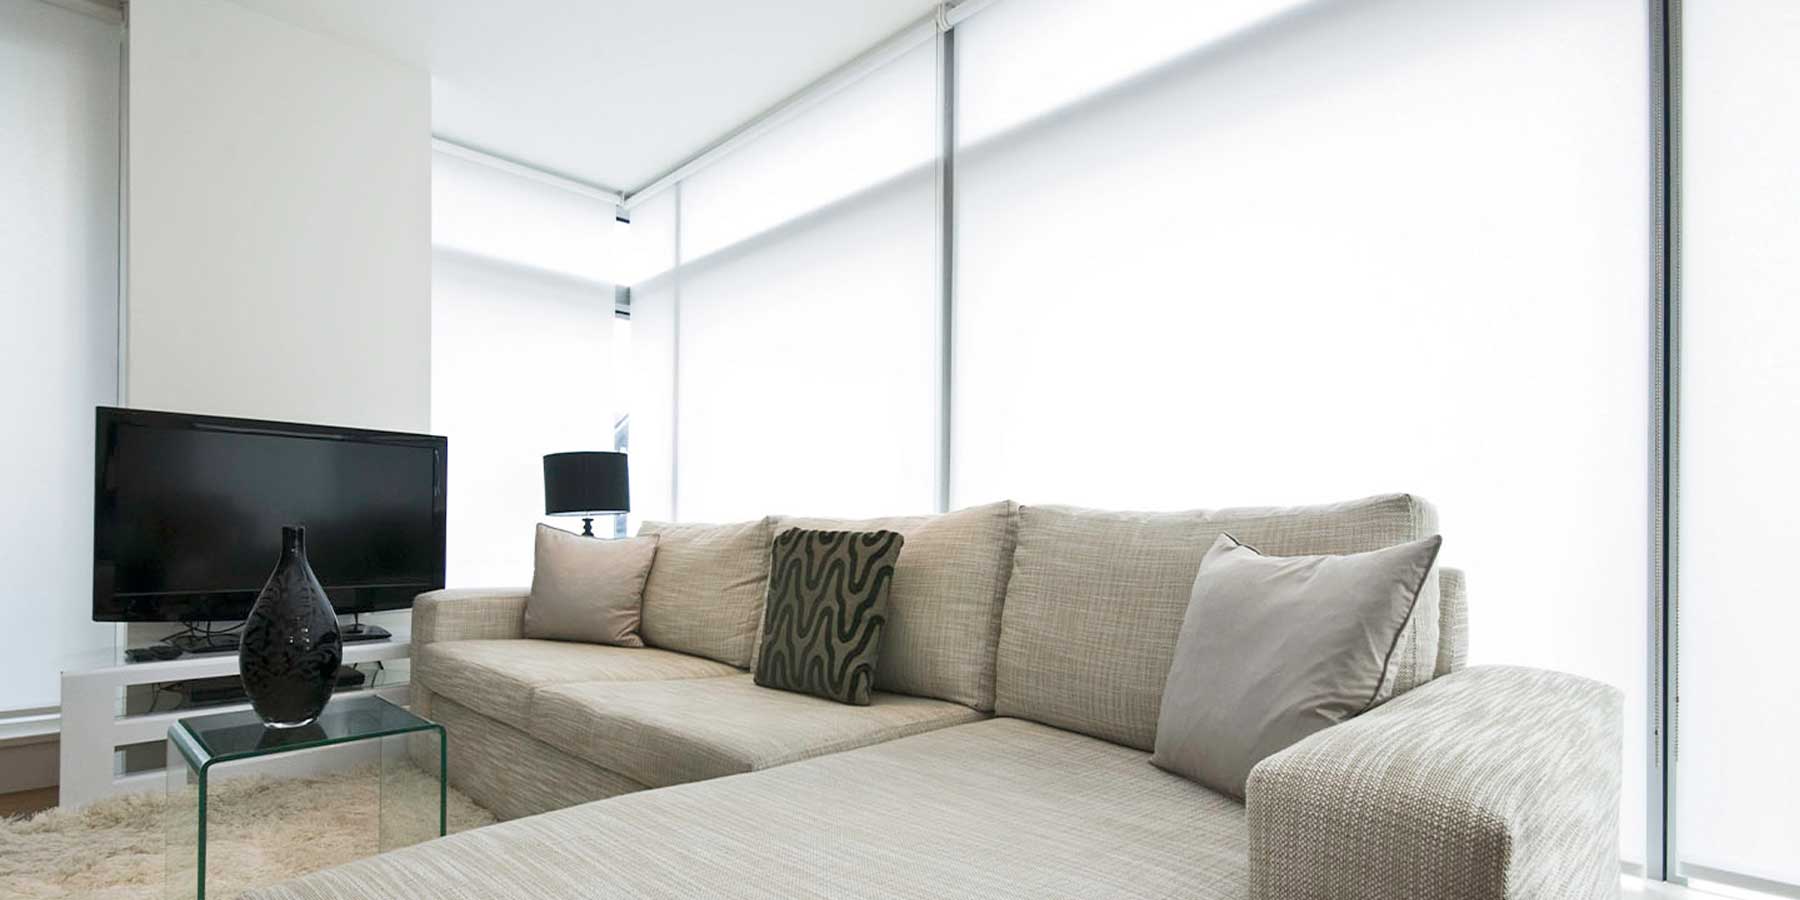 Light-filter-blinds-in-living-room